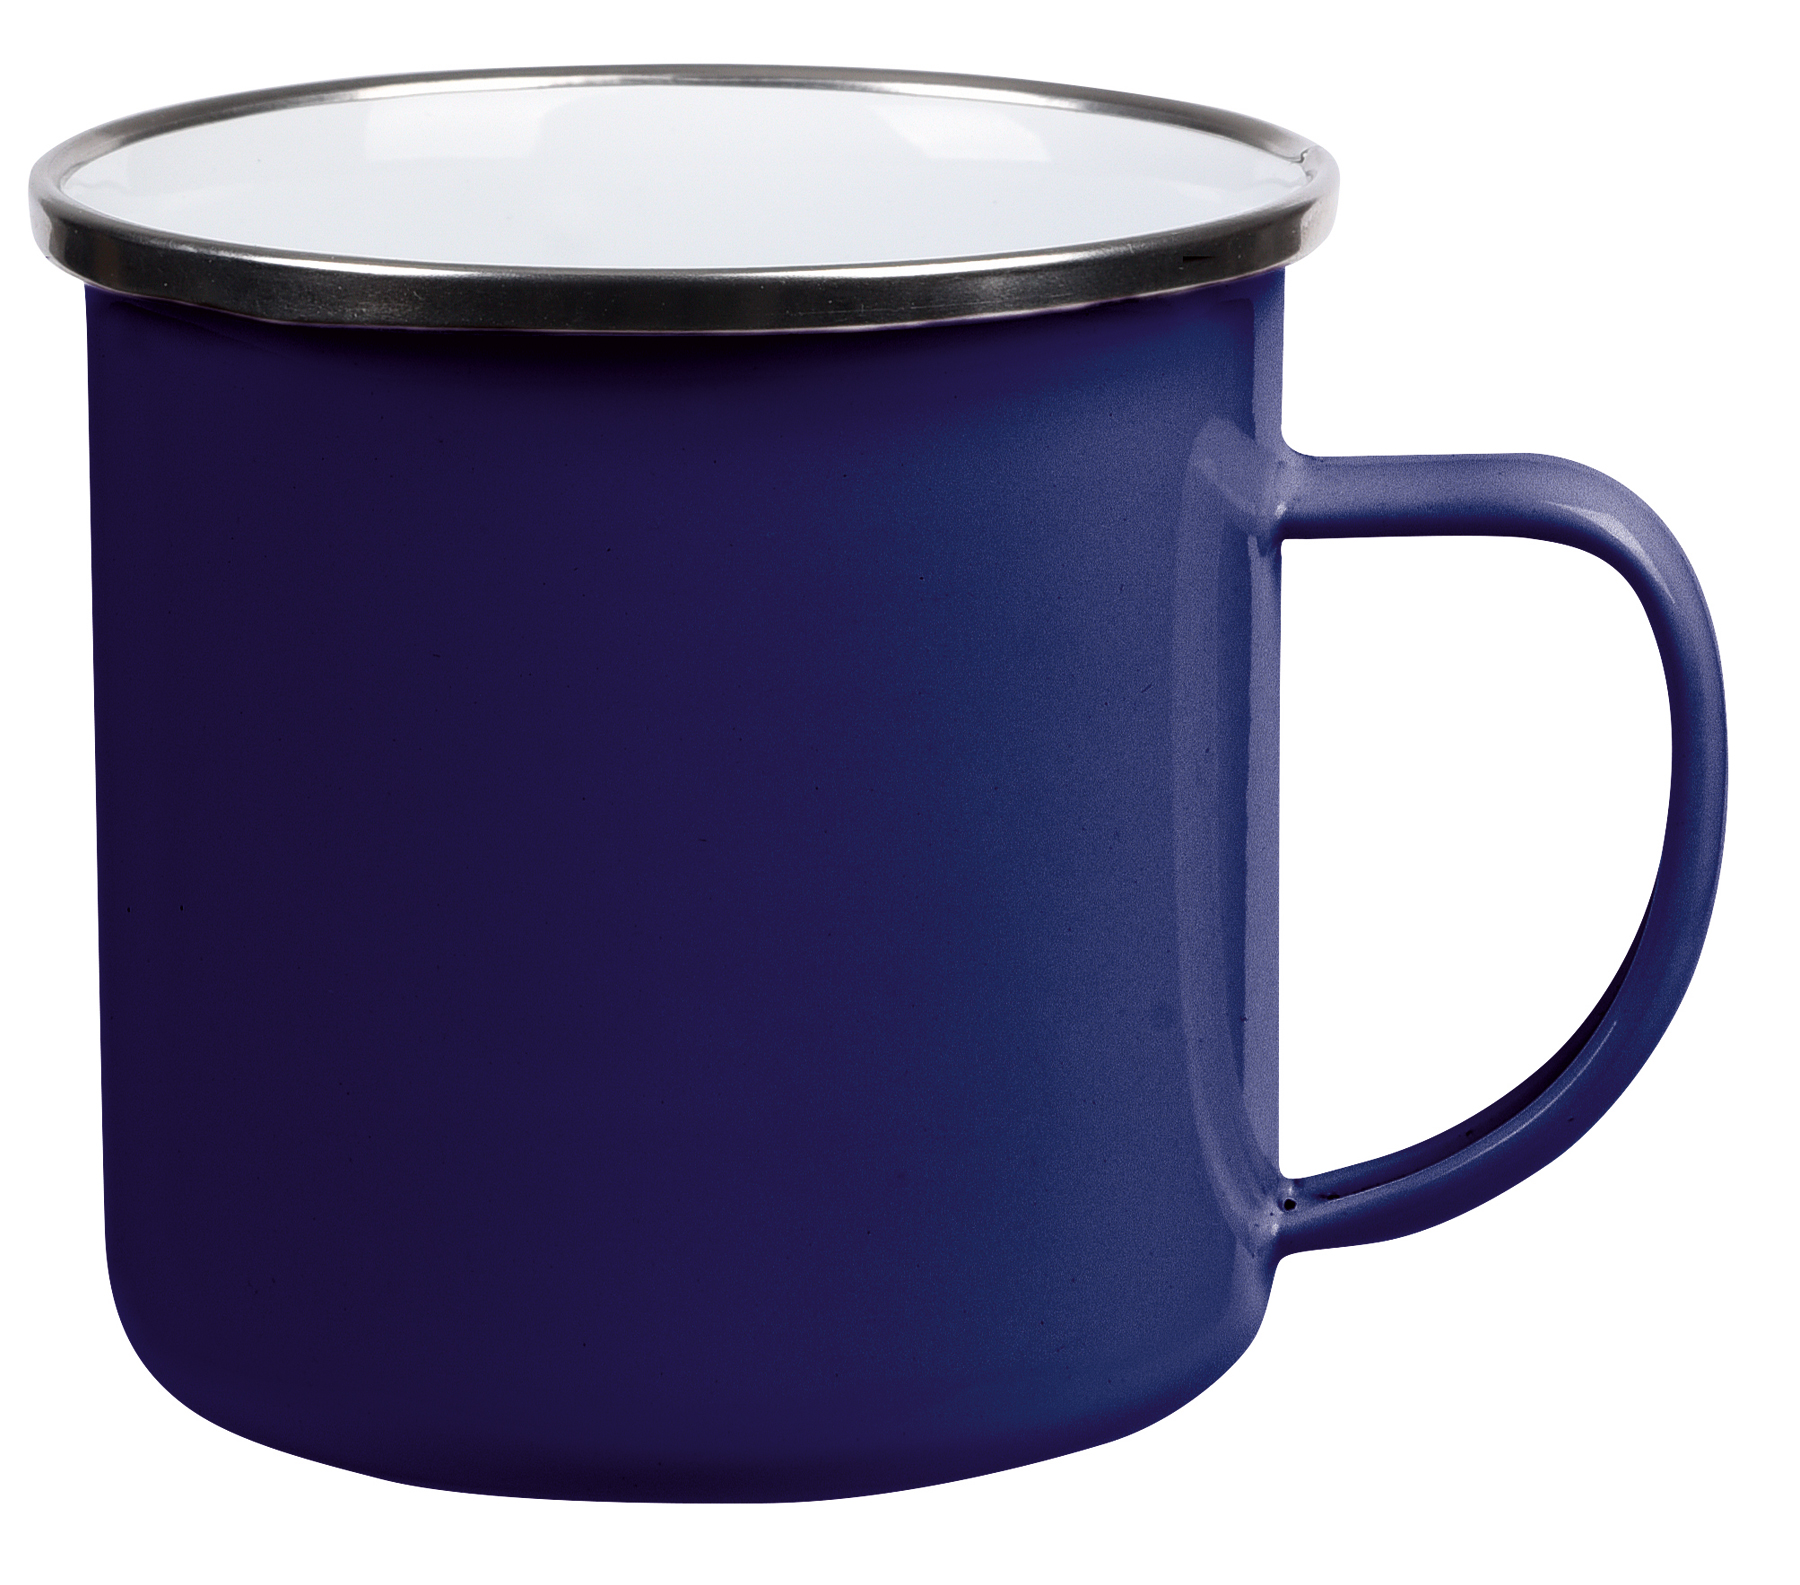 Smaltovaný nápojový hrnek VINTAGE CUP: vyroben z nerezové oceli s uchem, barvená vnější strana s bílým vnitřkem, stříbrný nerezový okraj, kapacita cca. 350 ml  - modrá - foto